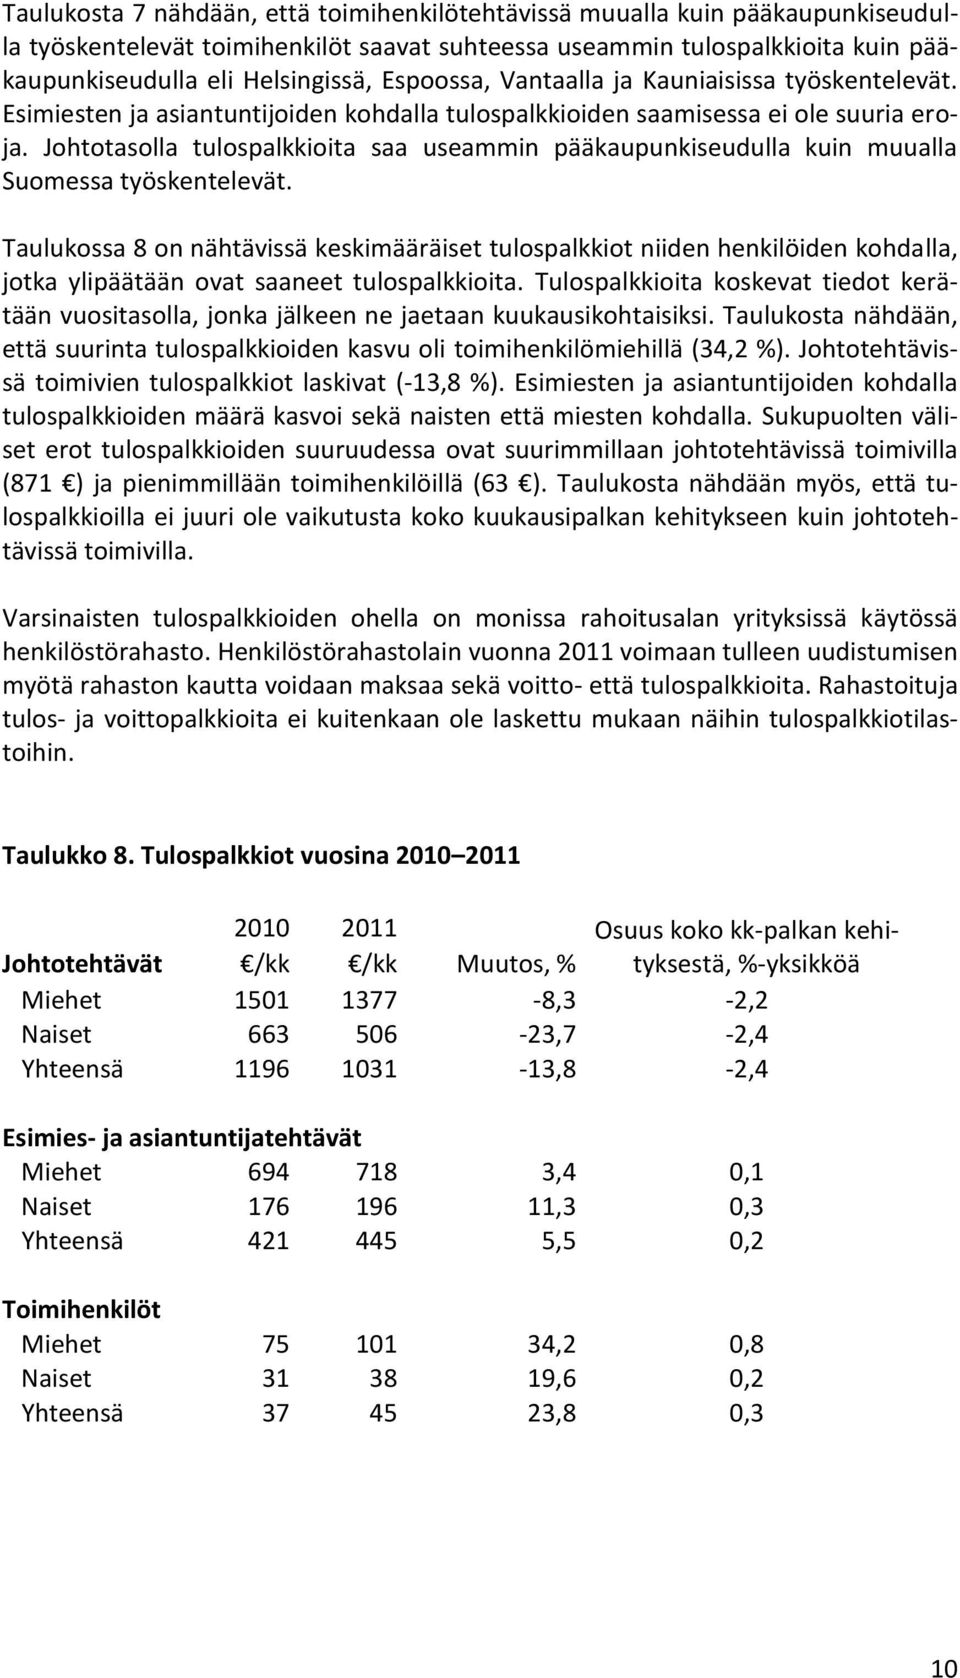 Johtotasolla tulospalkkioita saa useammin pääkaupunkiseudulla kuin muualla Suomessa työskentelevät.